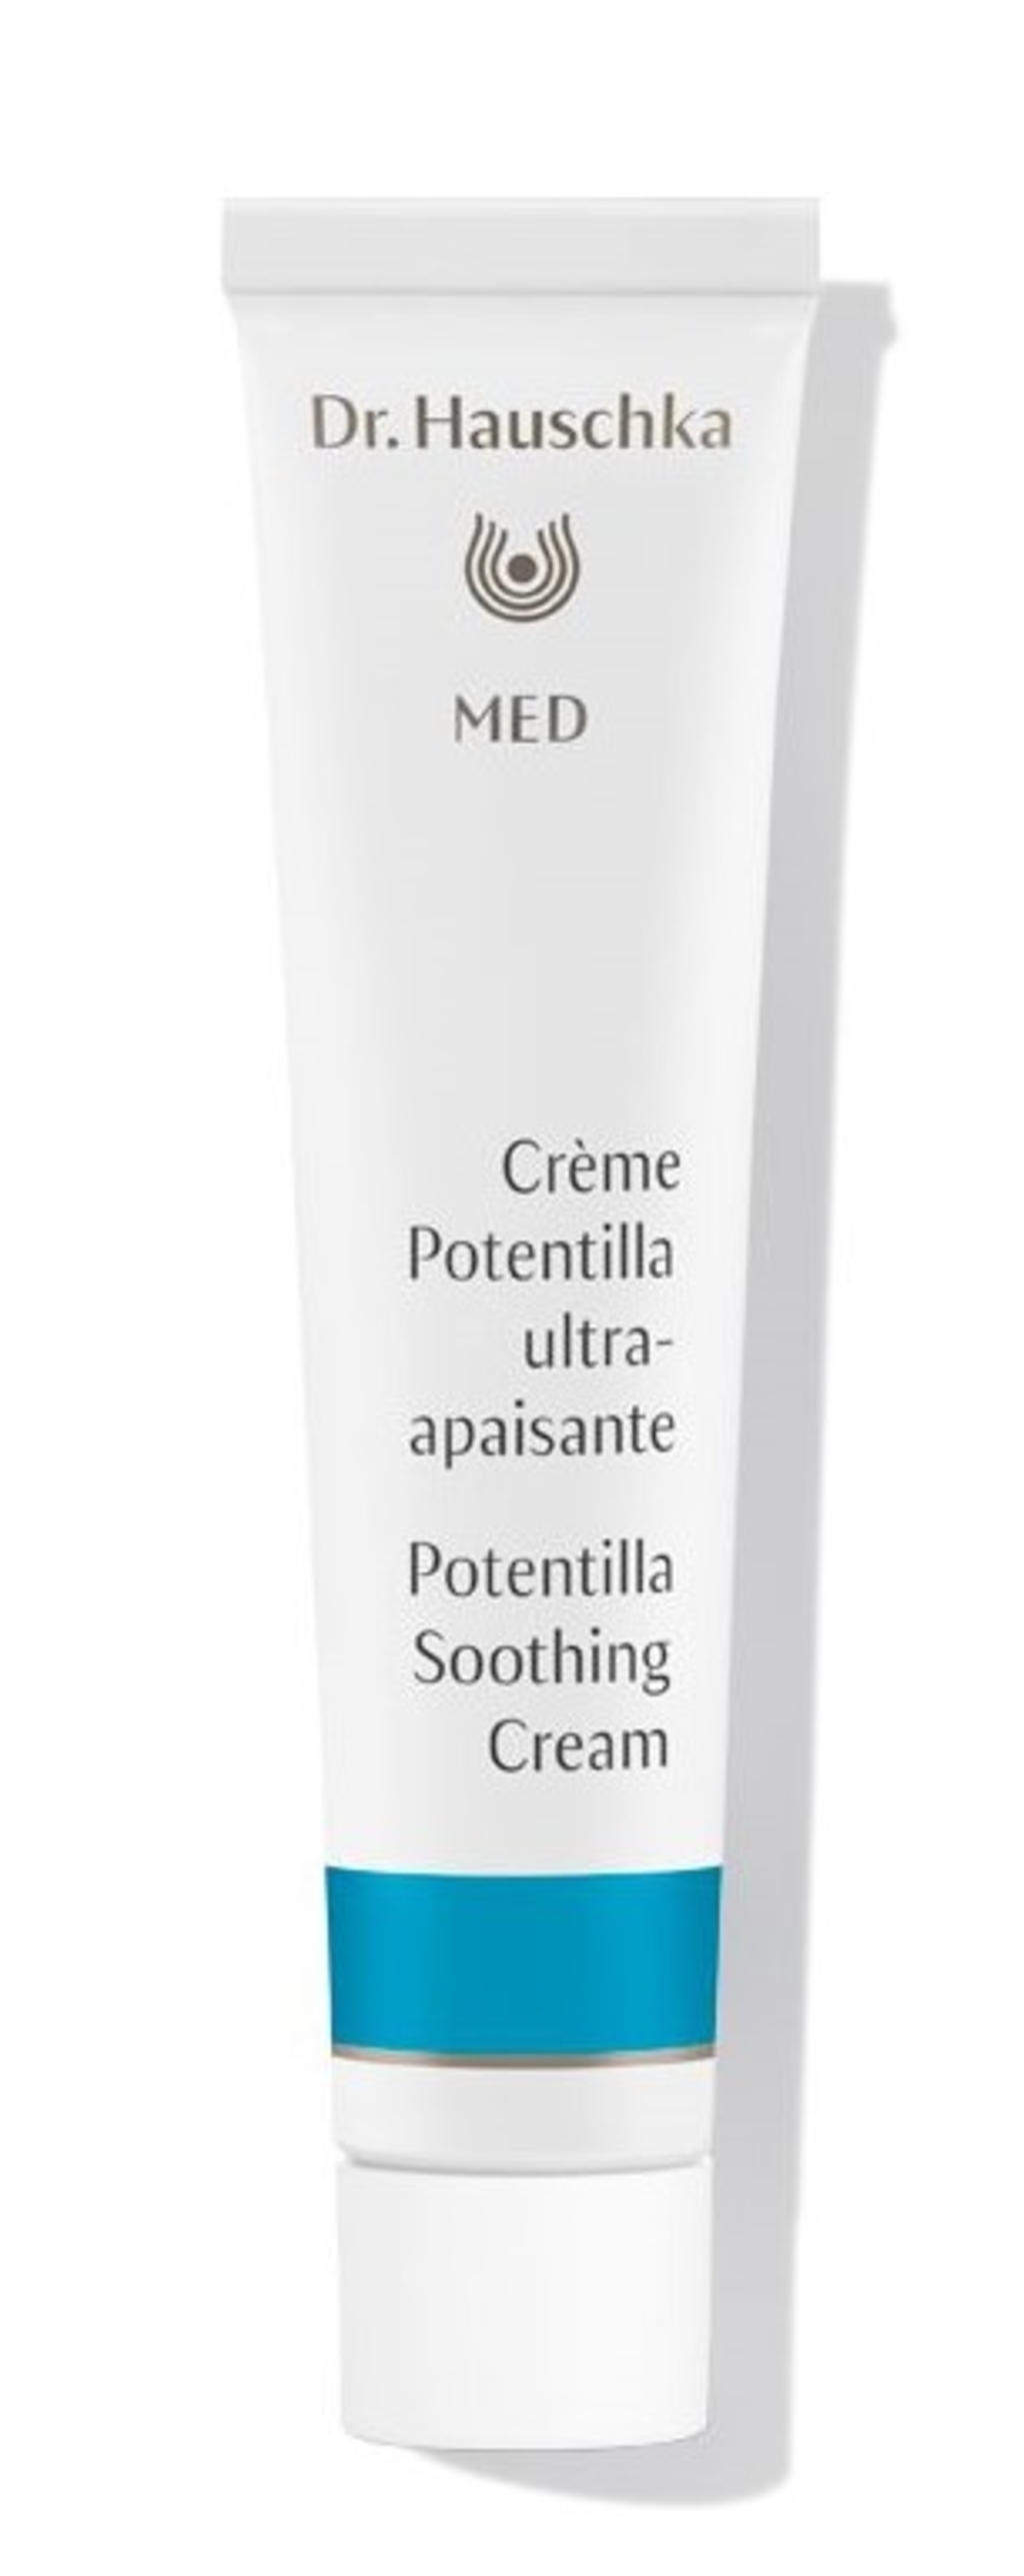 Crème potentilla ultra-apaisante Bio